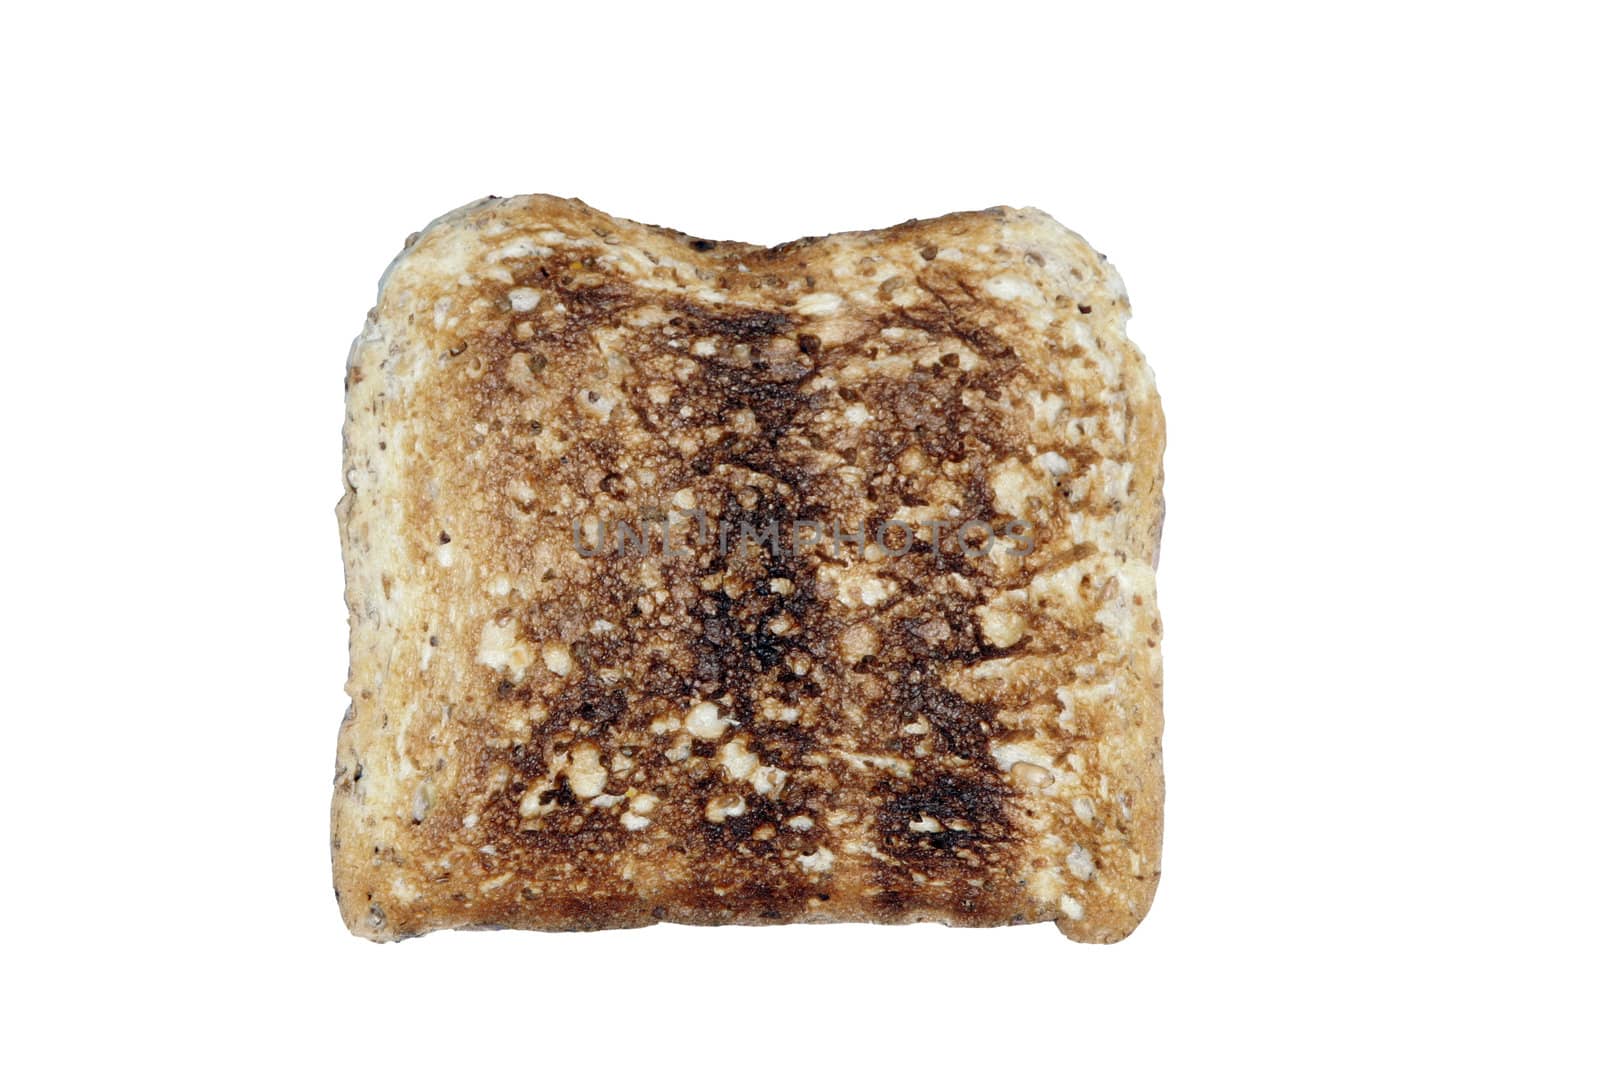 Toast by thorsten